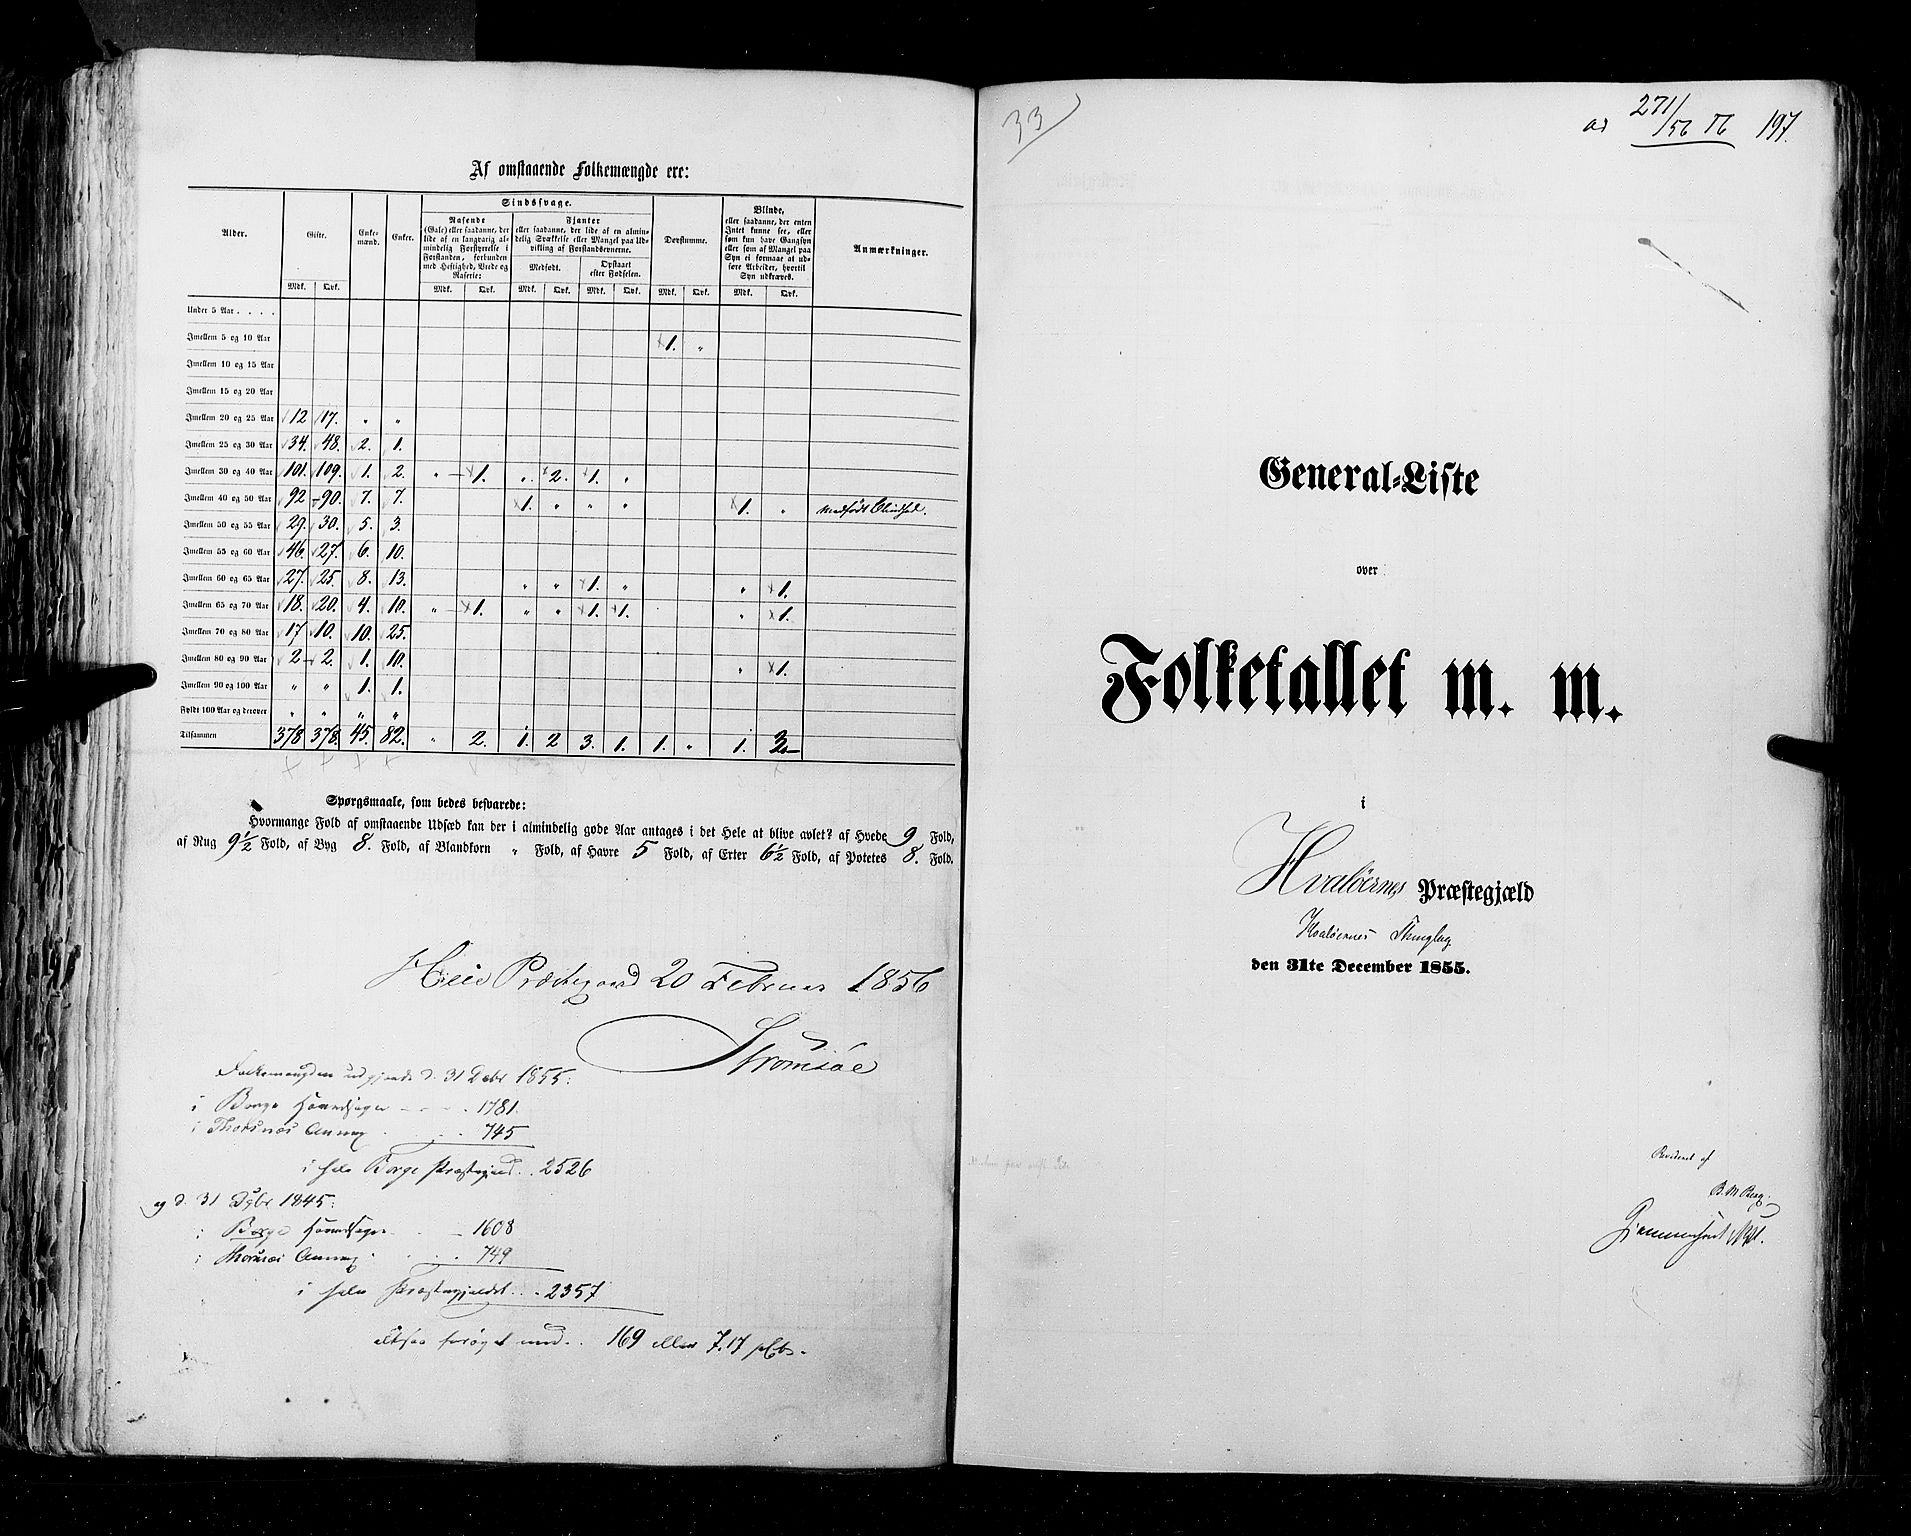 RA, Folketellingen 1855, bind 1: Akershus amt, Smålenenes amt og Hedemarken amt, 1855, s. 197